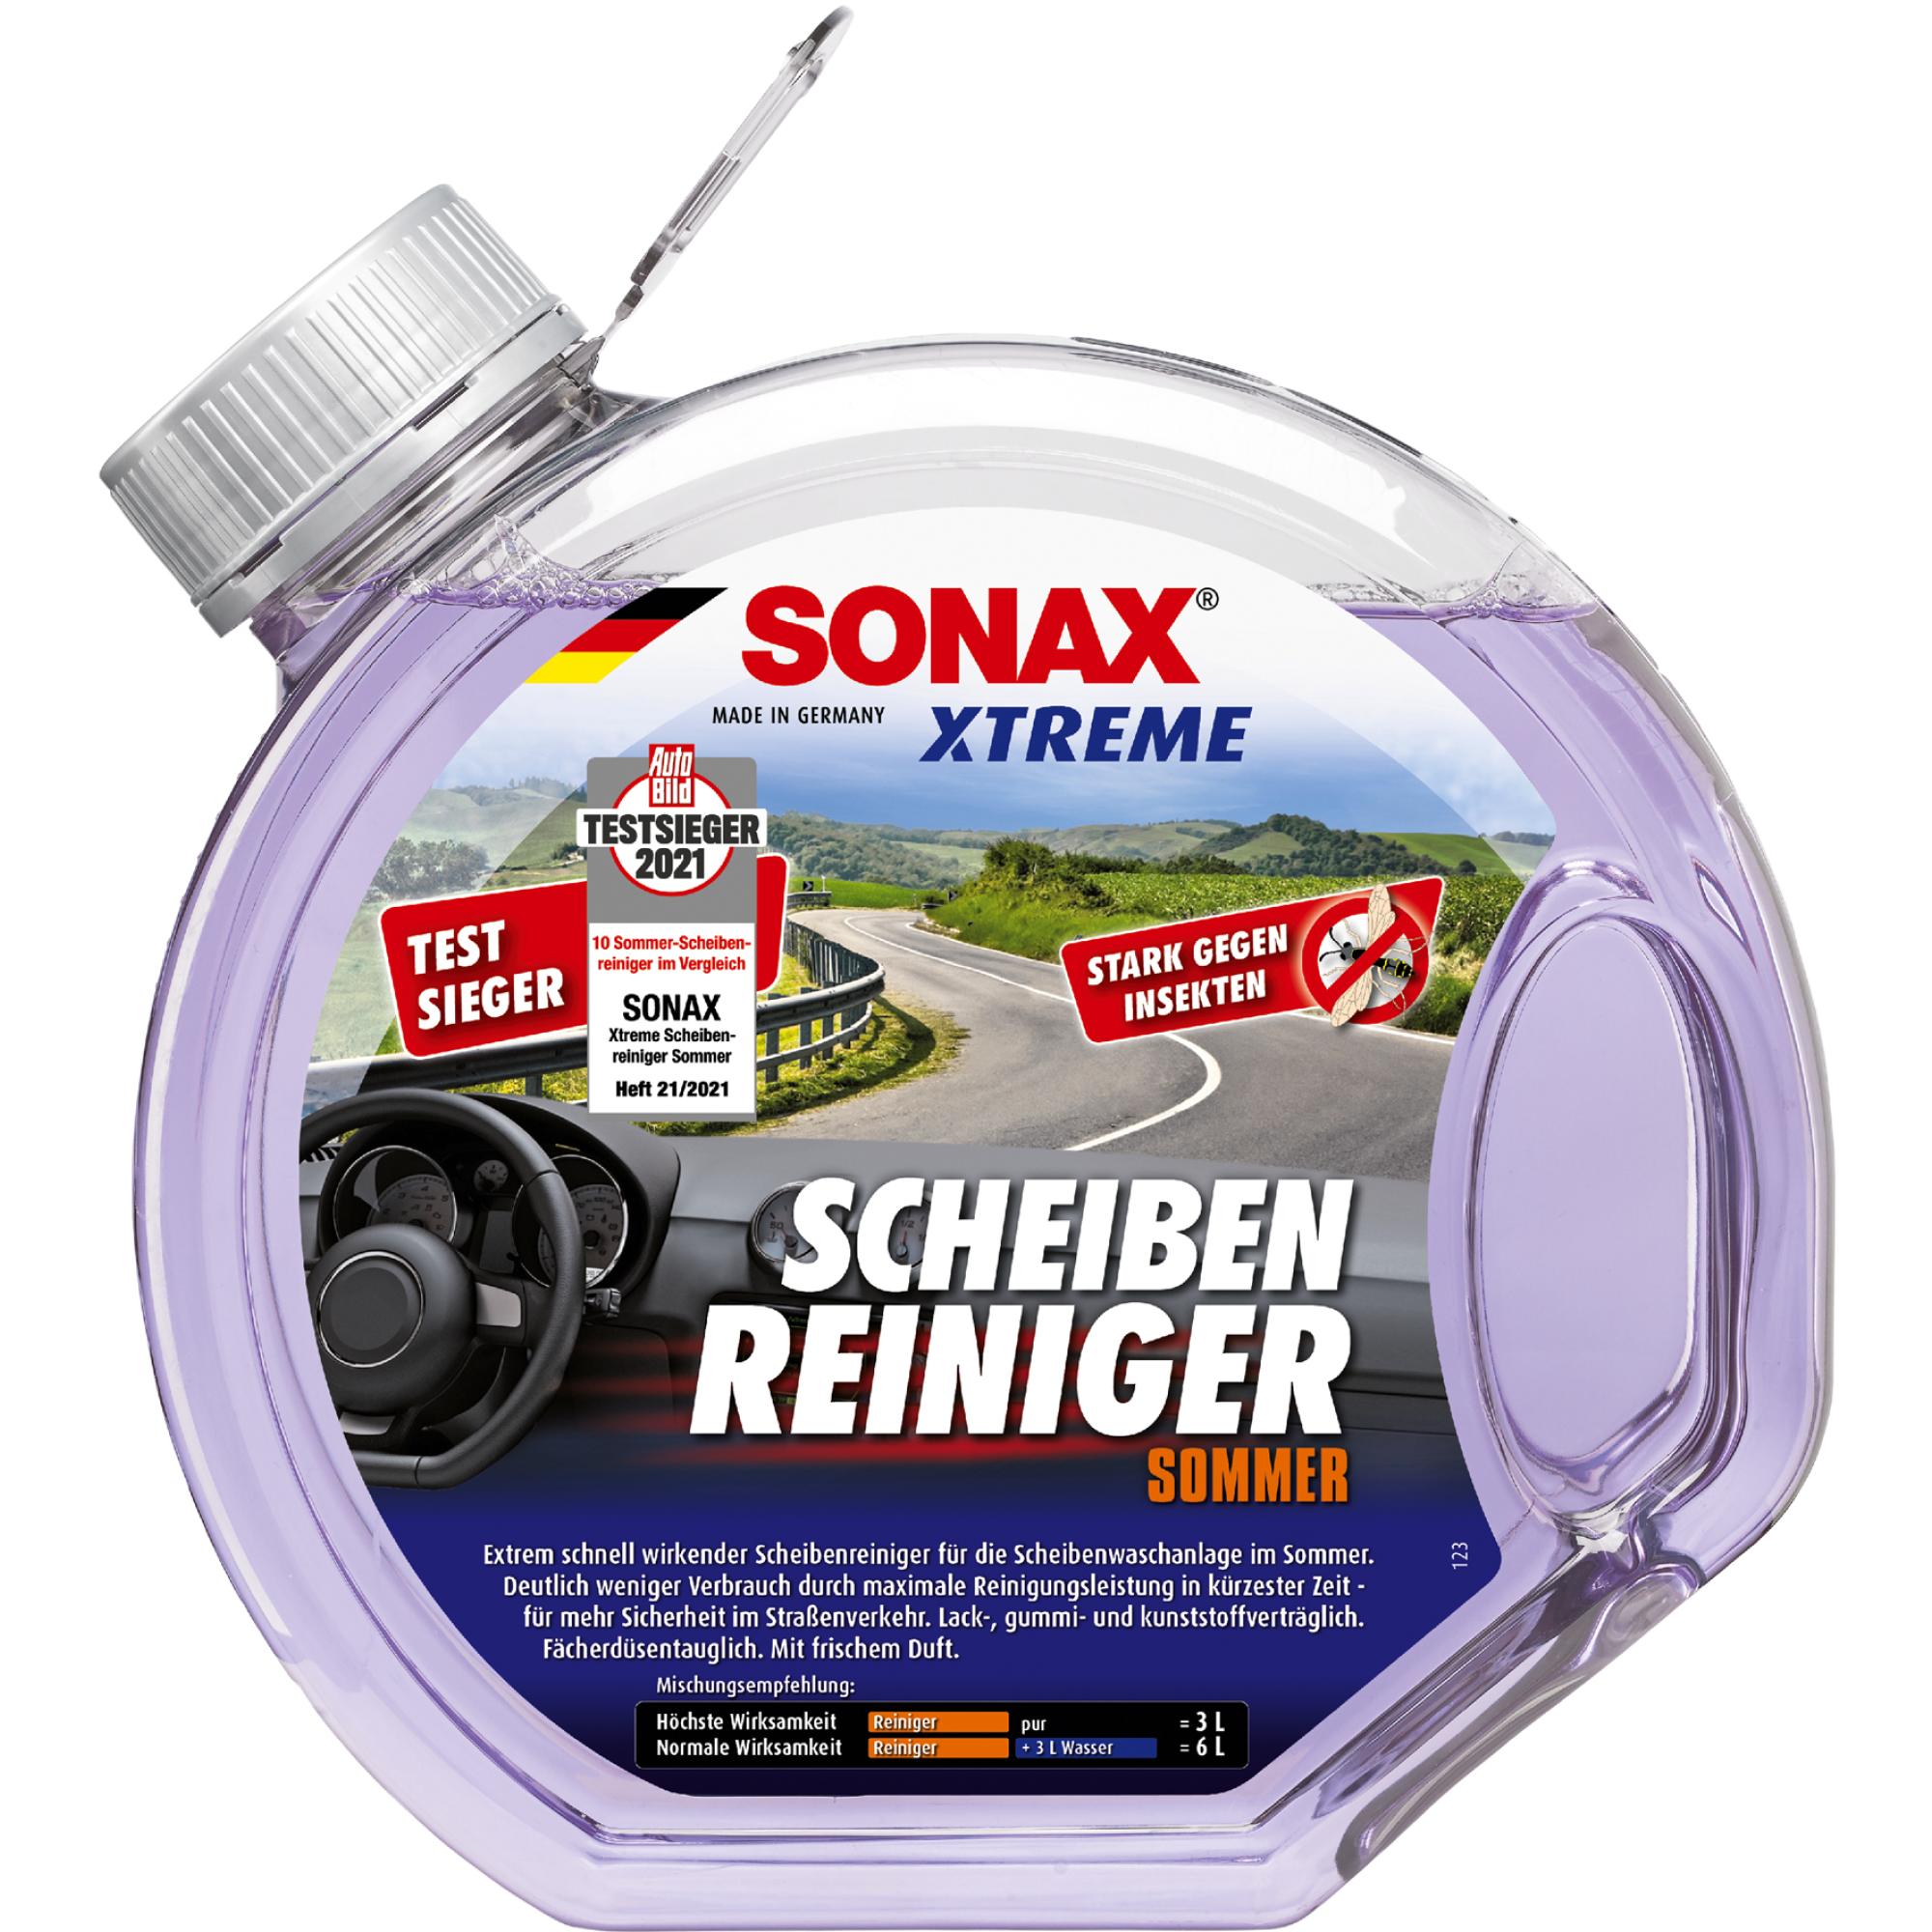 SONAX XTREME SCHEIBENREINIGER 3 L